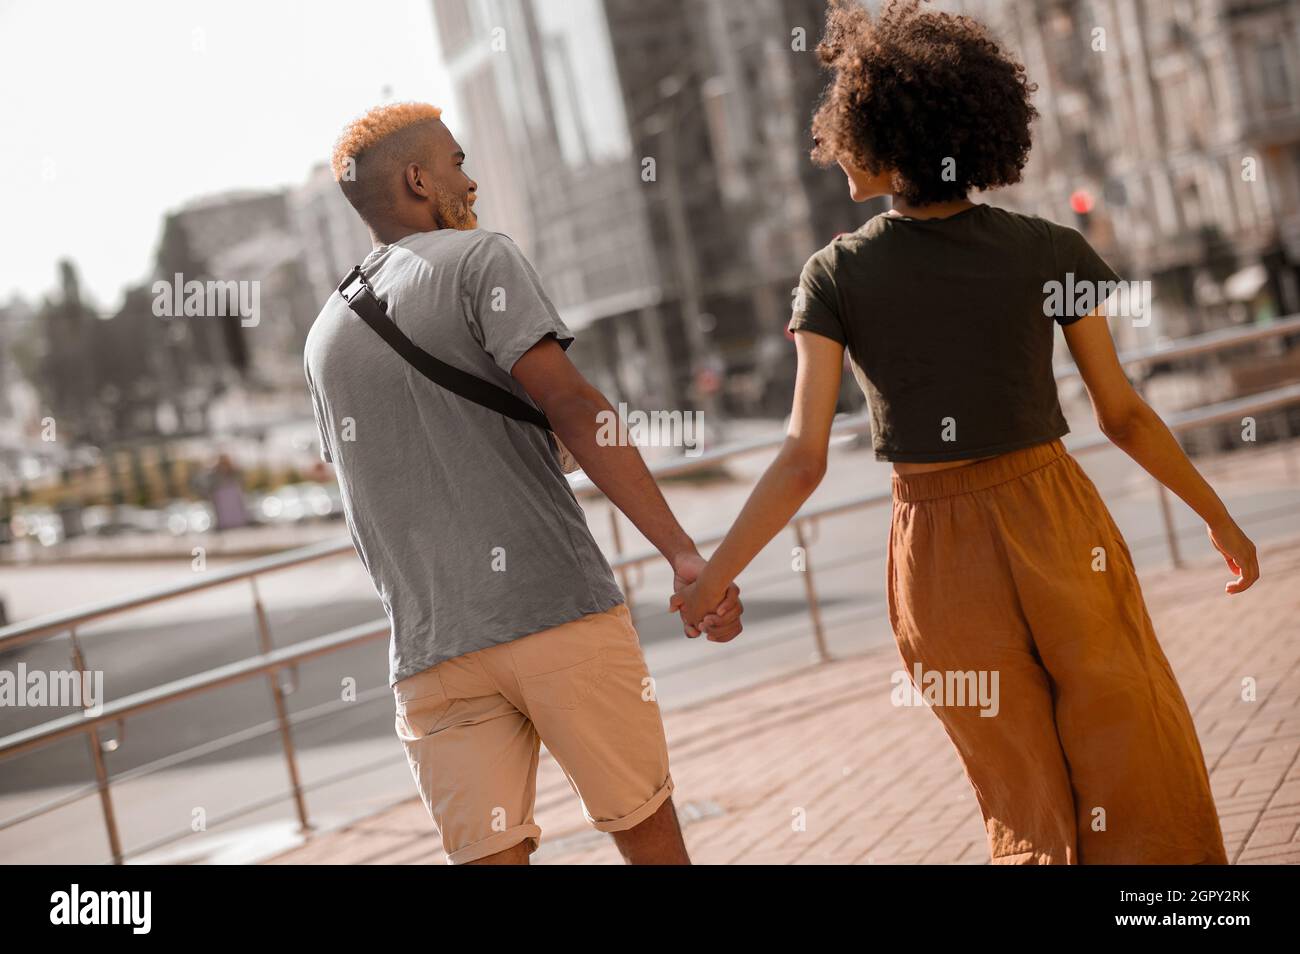 Una felice coppia di pelle scura in strada che guarda eccitato Foto Stock